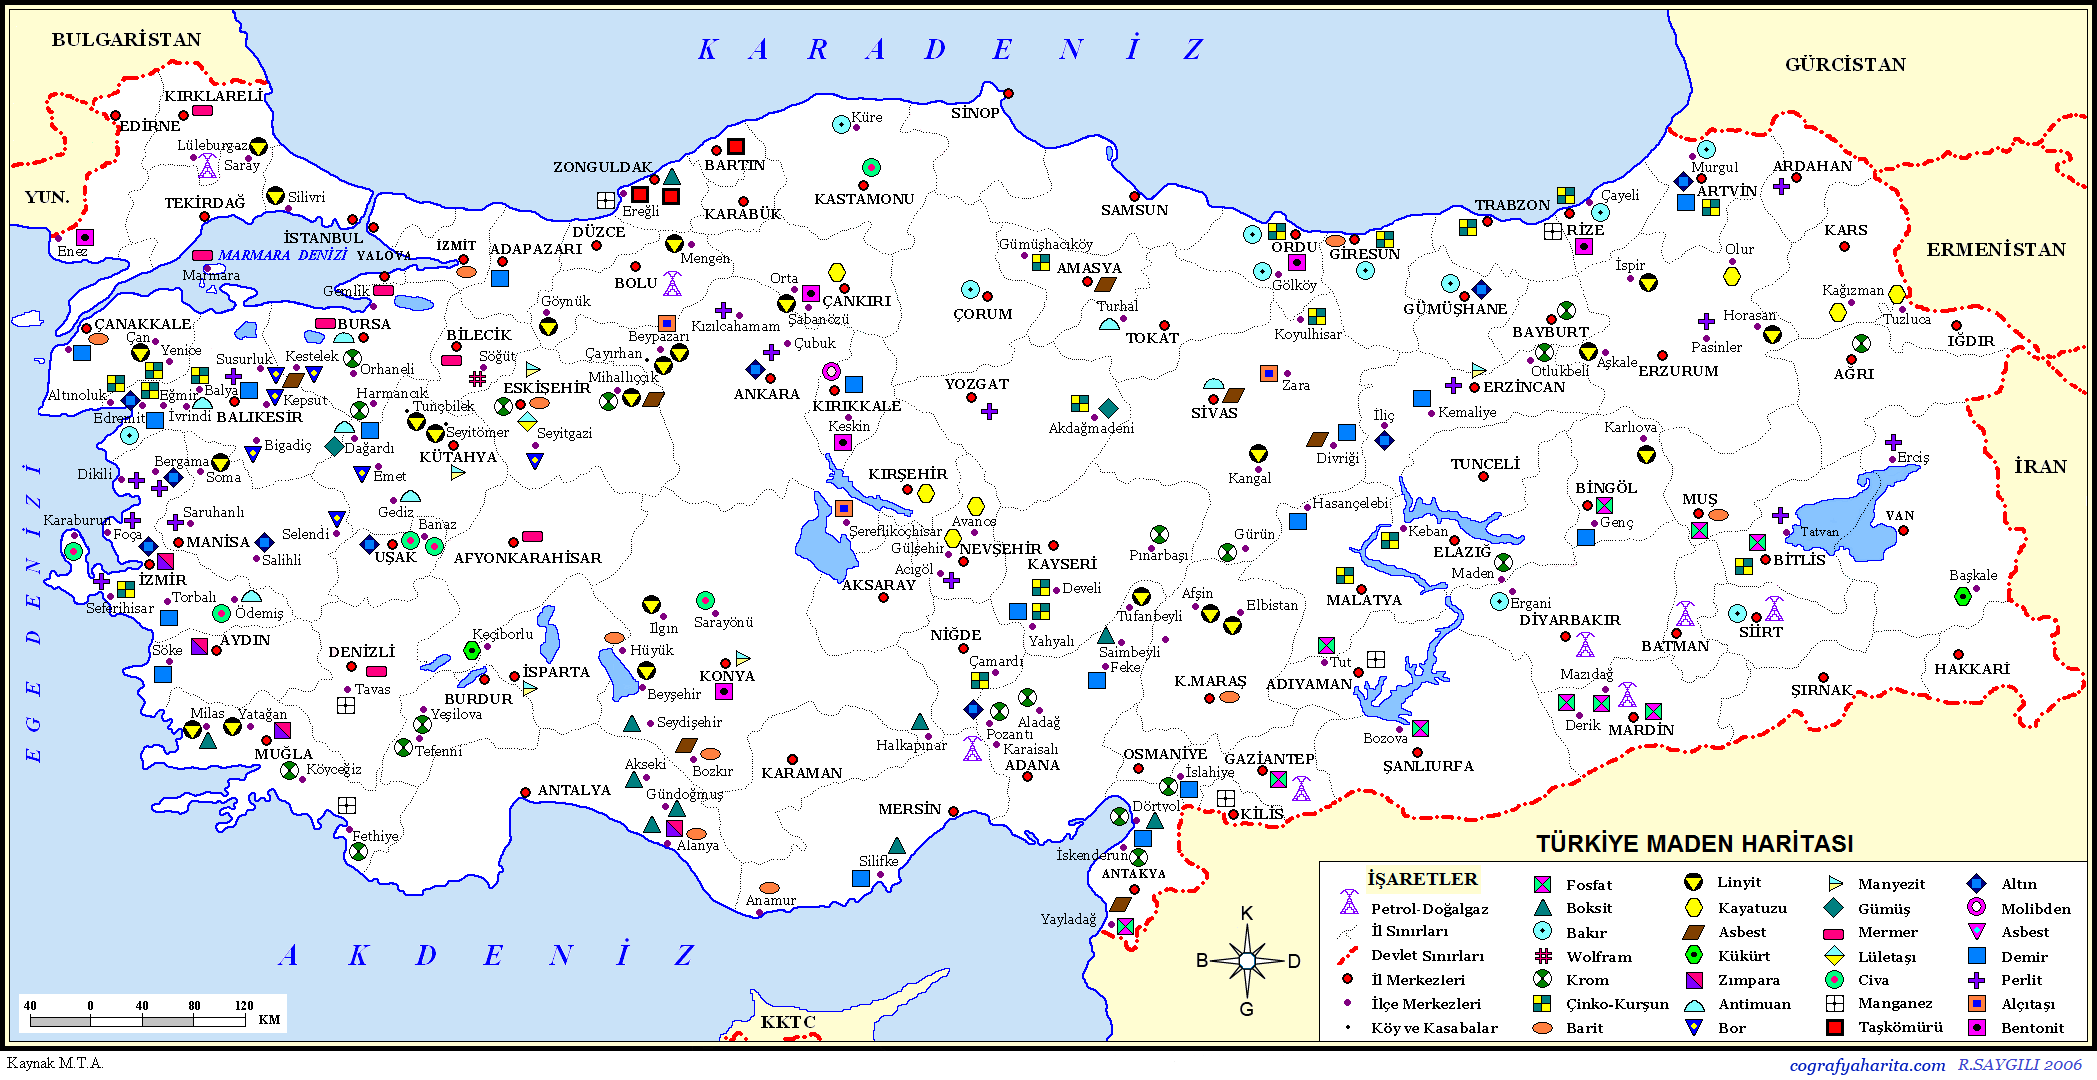 Turkiye Maden Haritasi Turkiye Nin Madenleri Ve Cikarildigi Yerler Nerelerdir Il Il Turkiye Deki Madenler